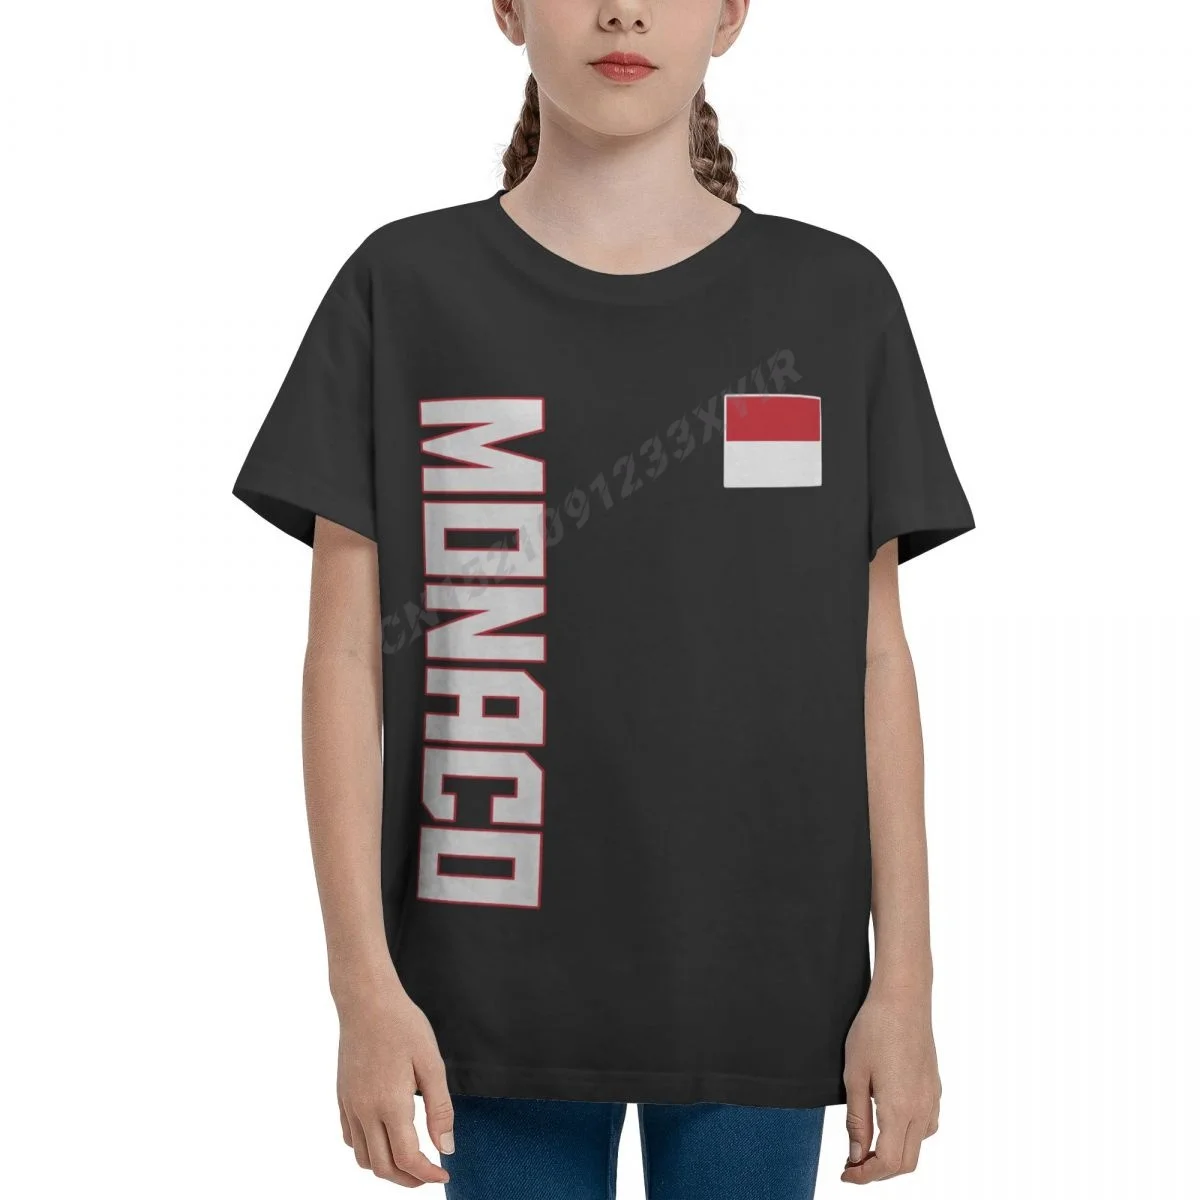 

Молодежная Футболка с флагом Монако для мальчиков и девочек, крутая футболка с моноканом, Детская футболка, футболка из 100% хлопка, Детская ф...